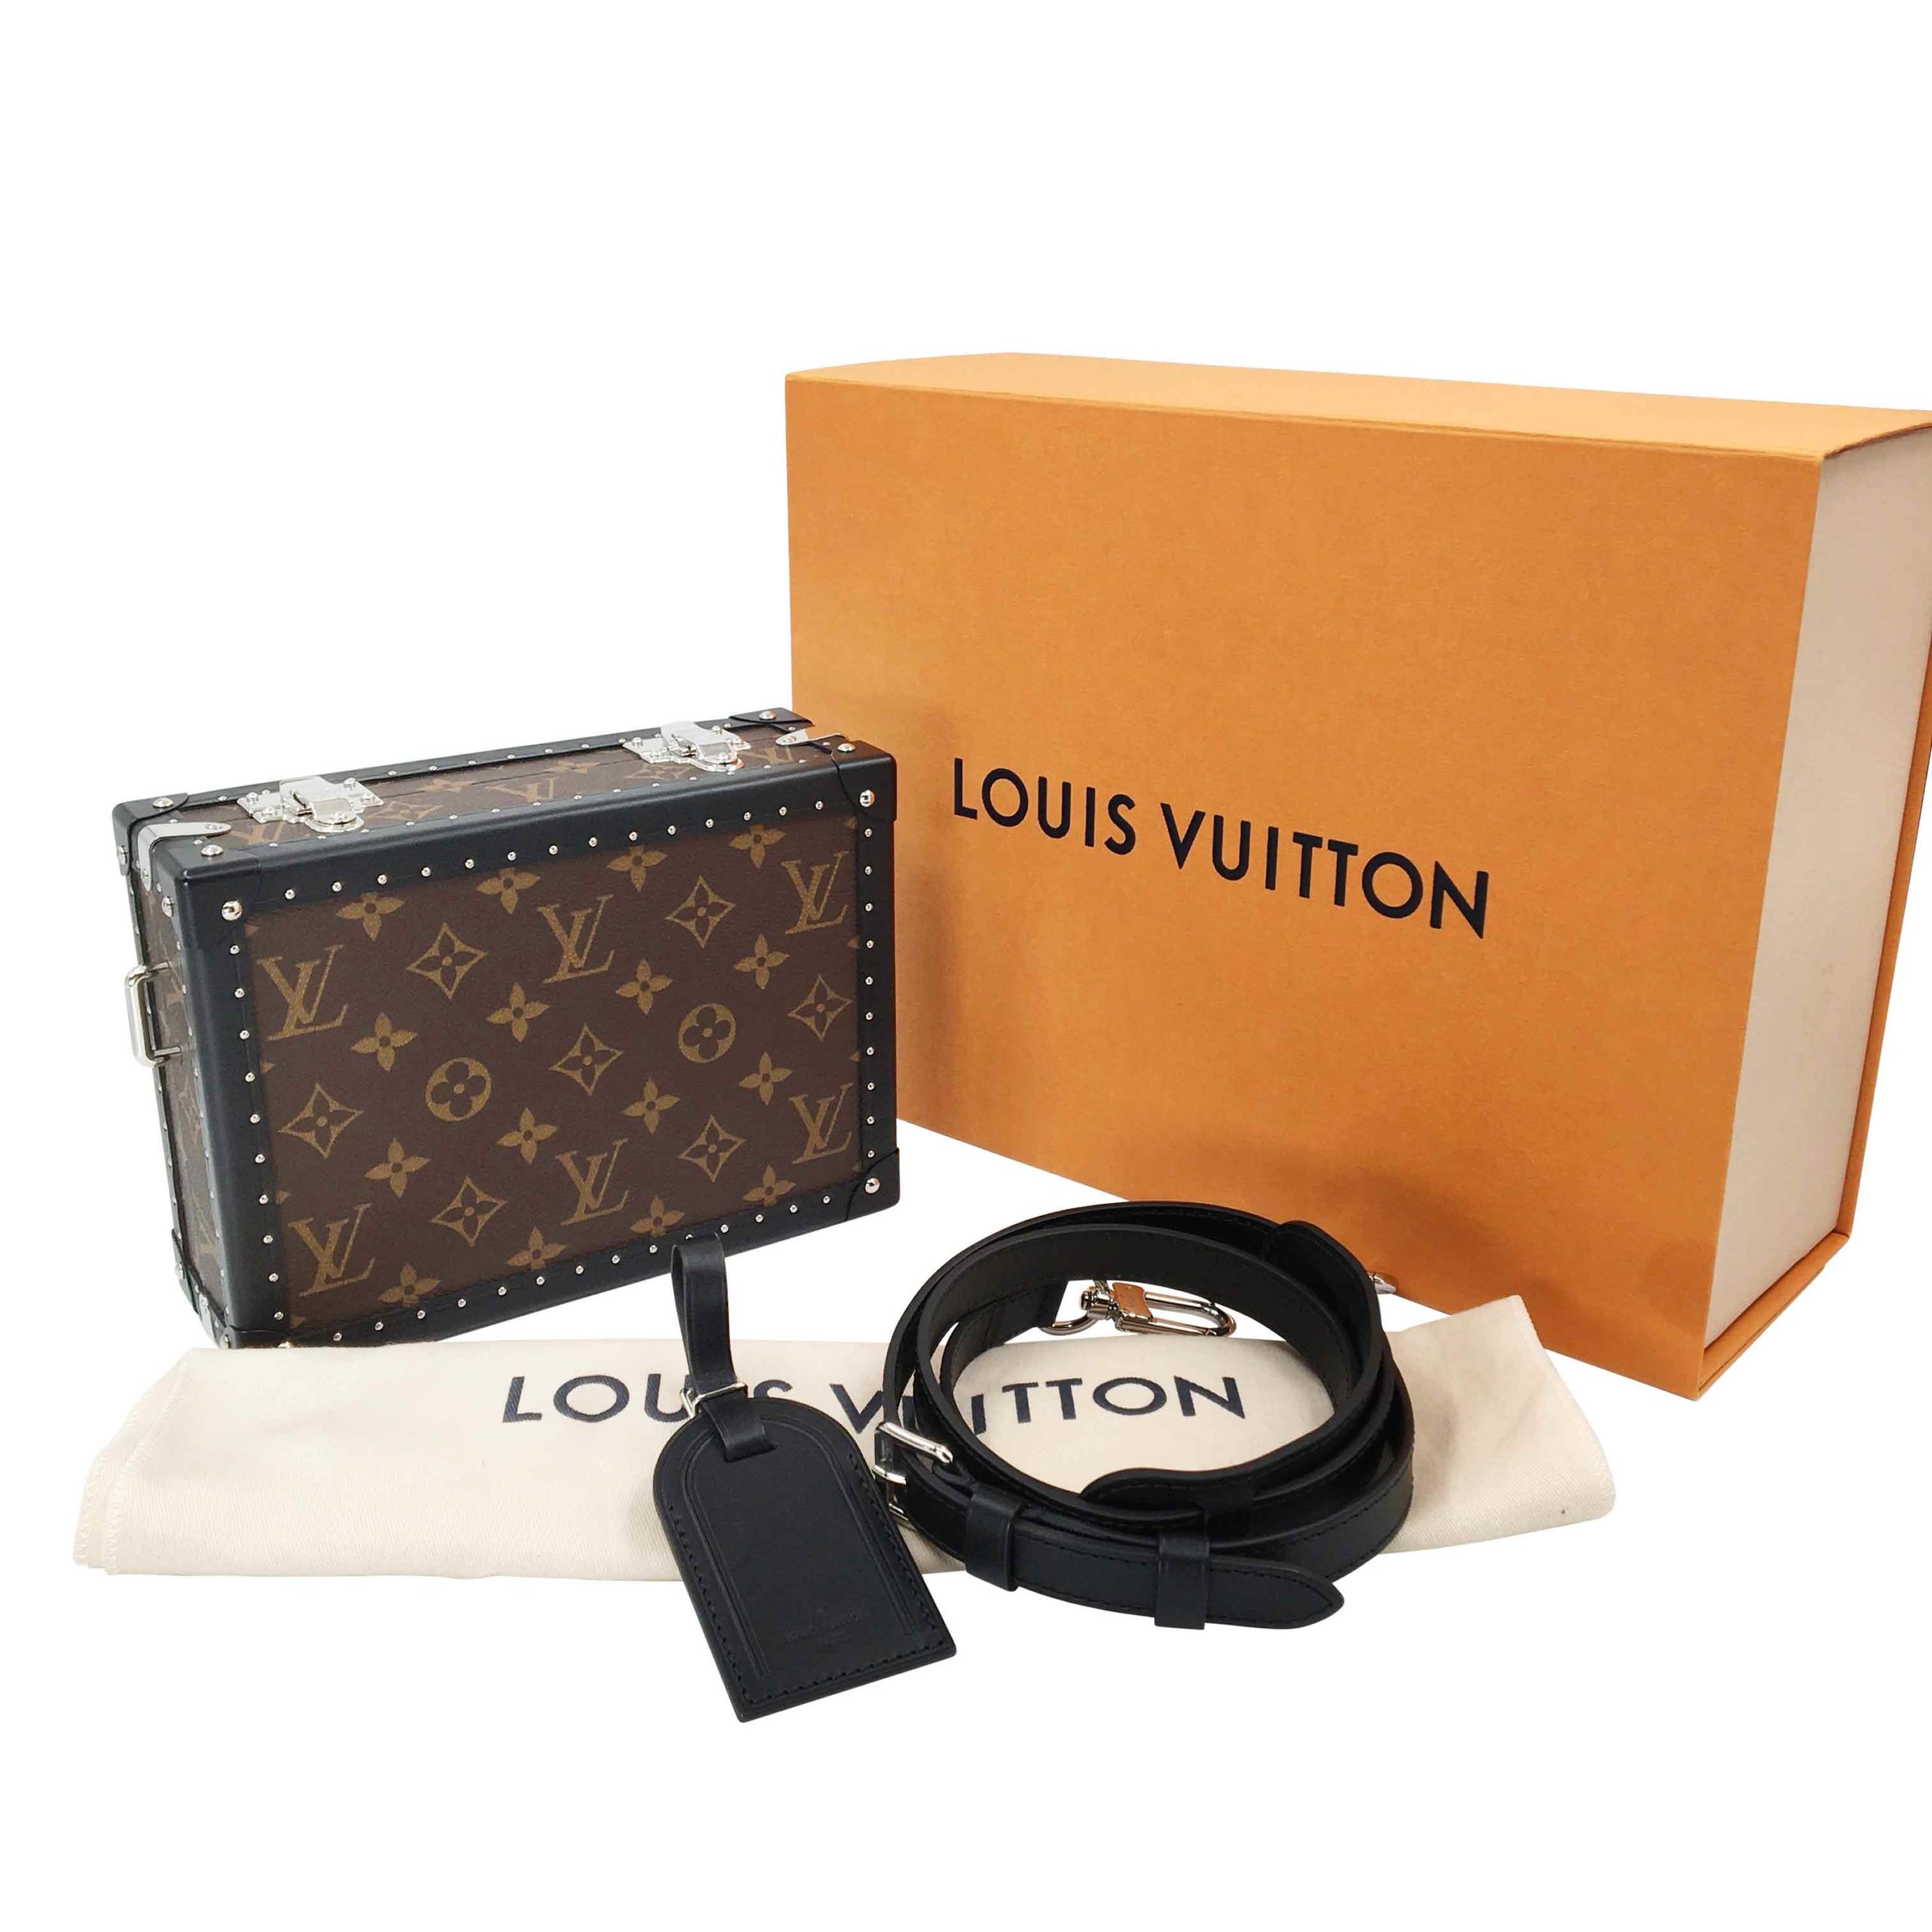 MIRROR CLUTCH BOX  Vuitton outfit, Nightclub design, Luxury design